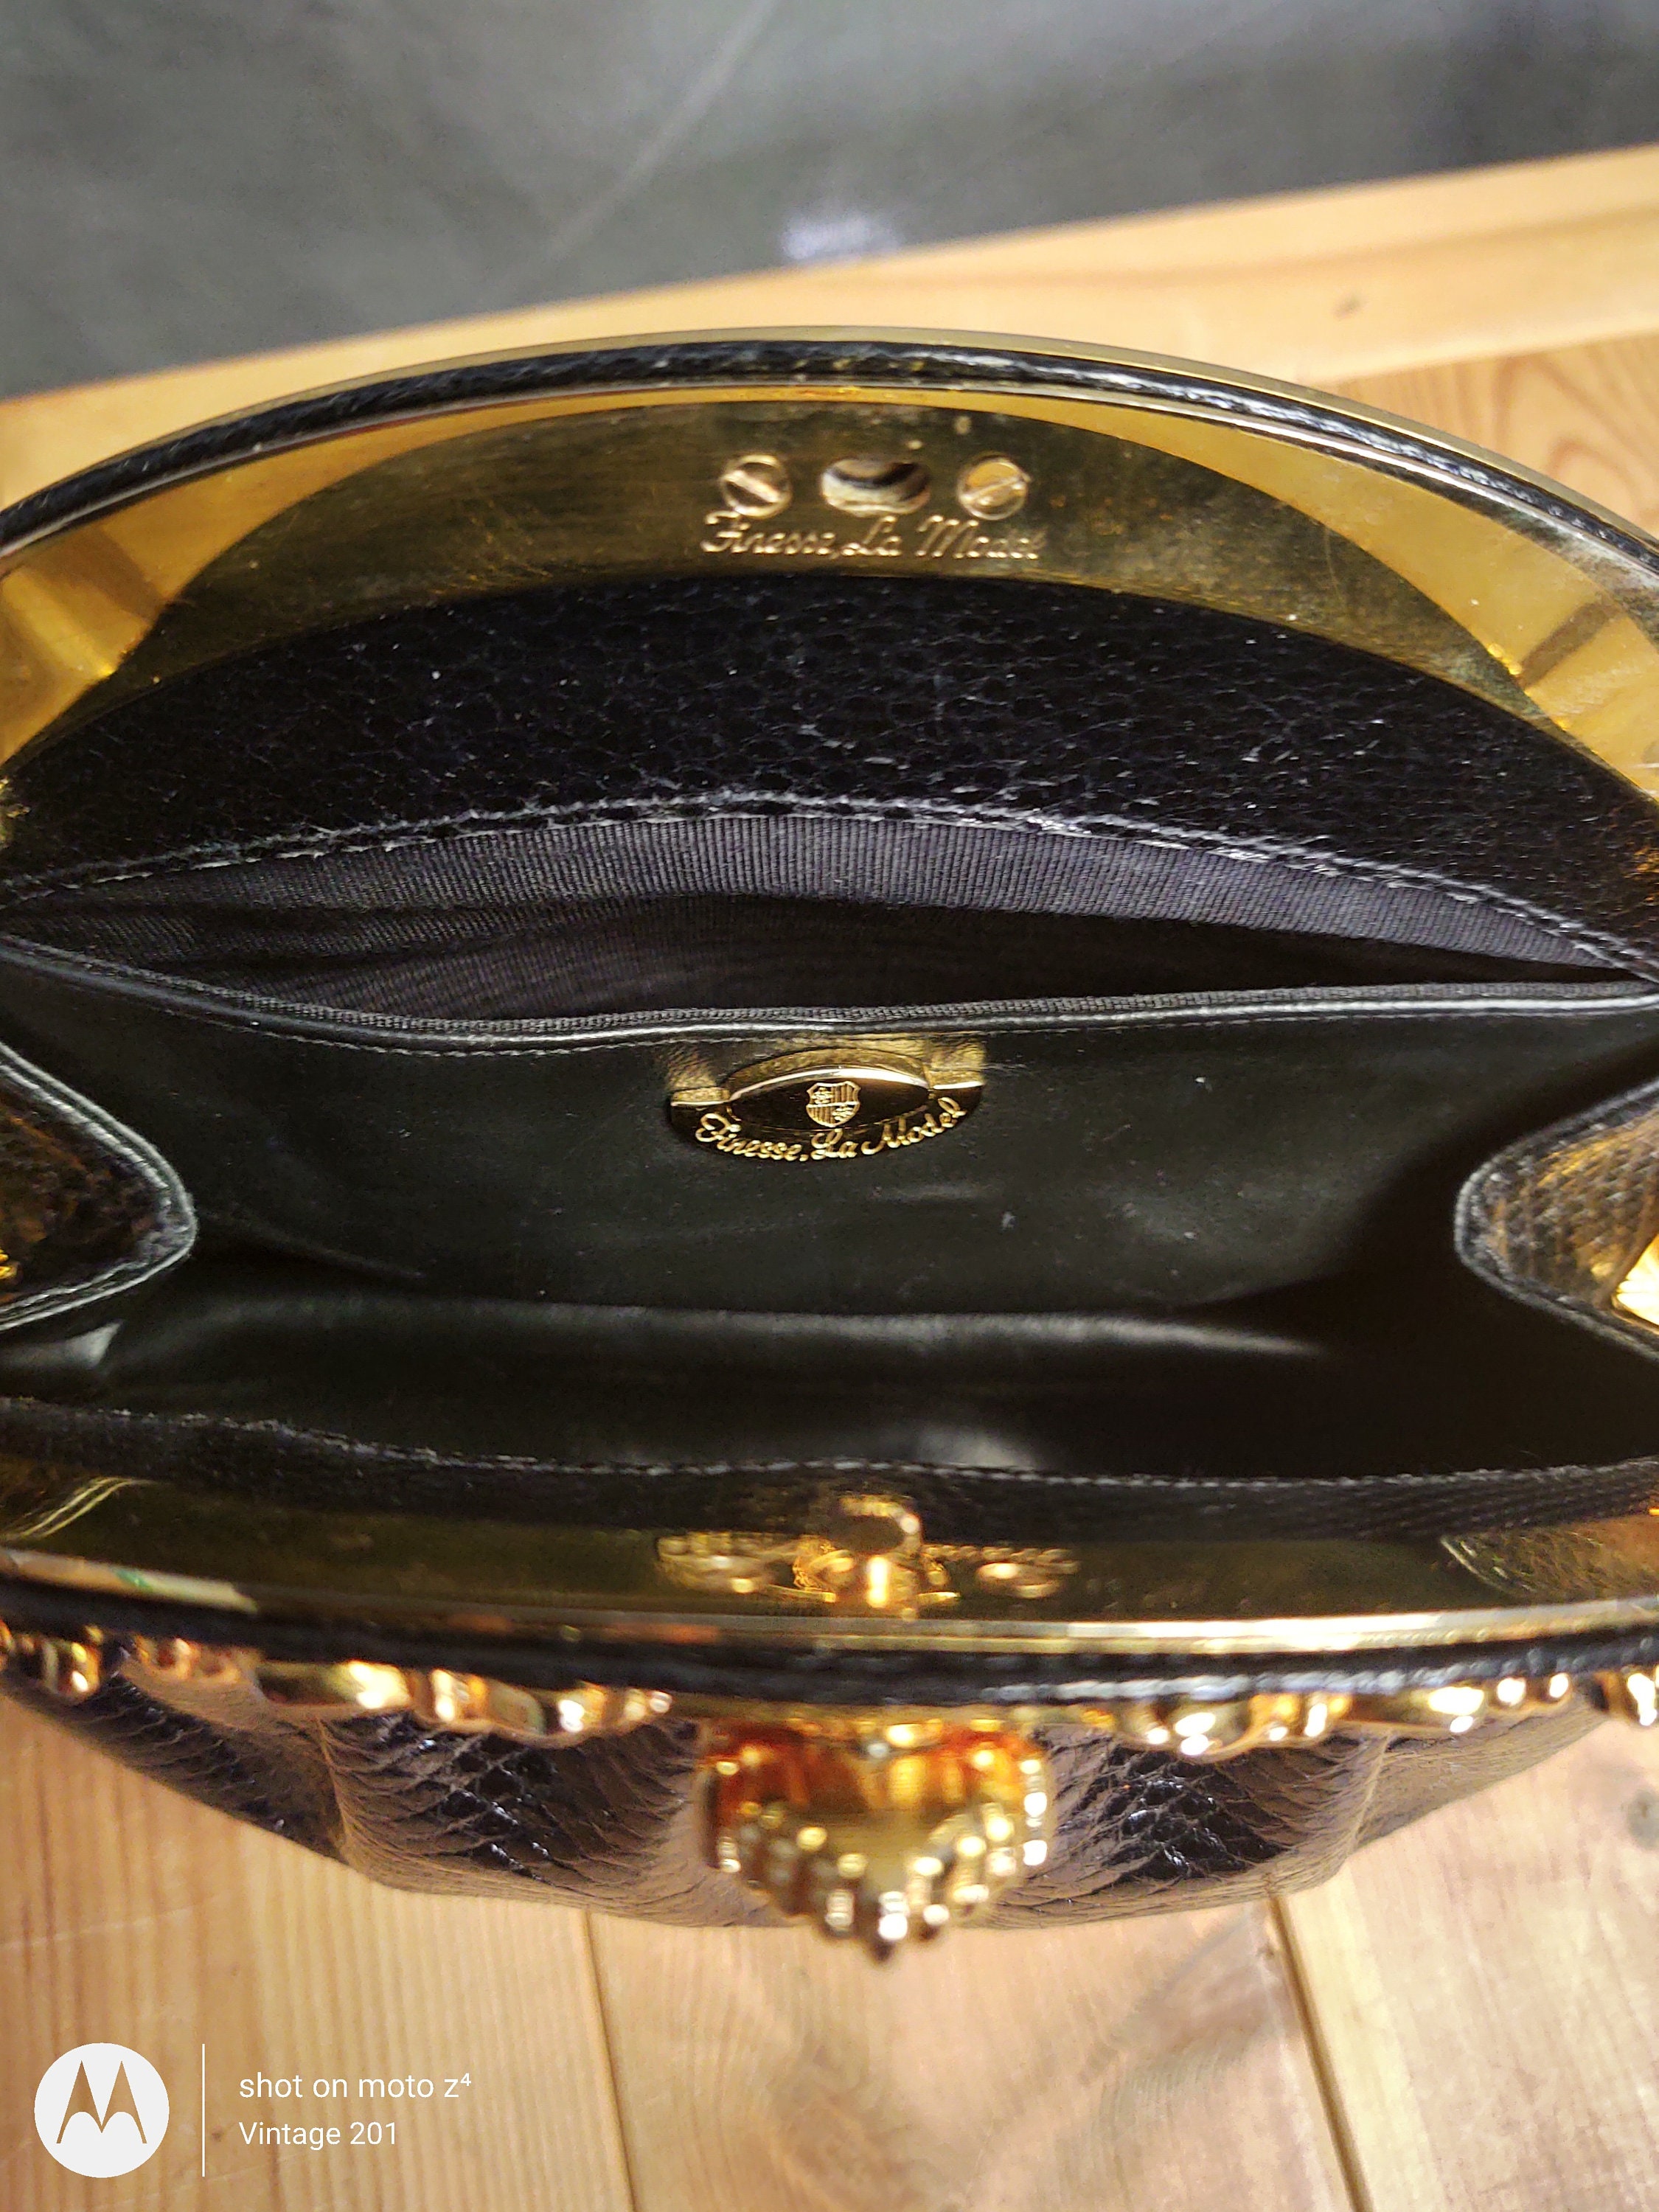 Vintage Black Snakeskin Gold Chain Purse Clutch Should Hand Bag 